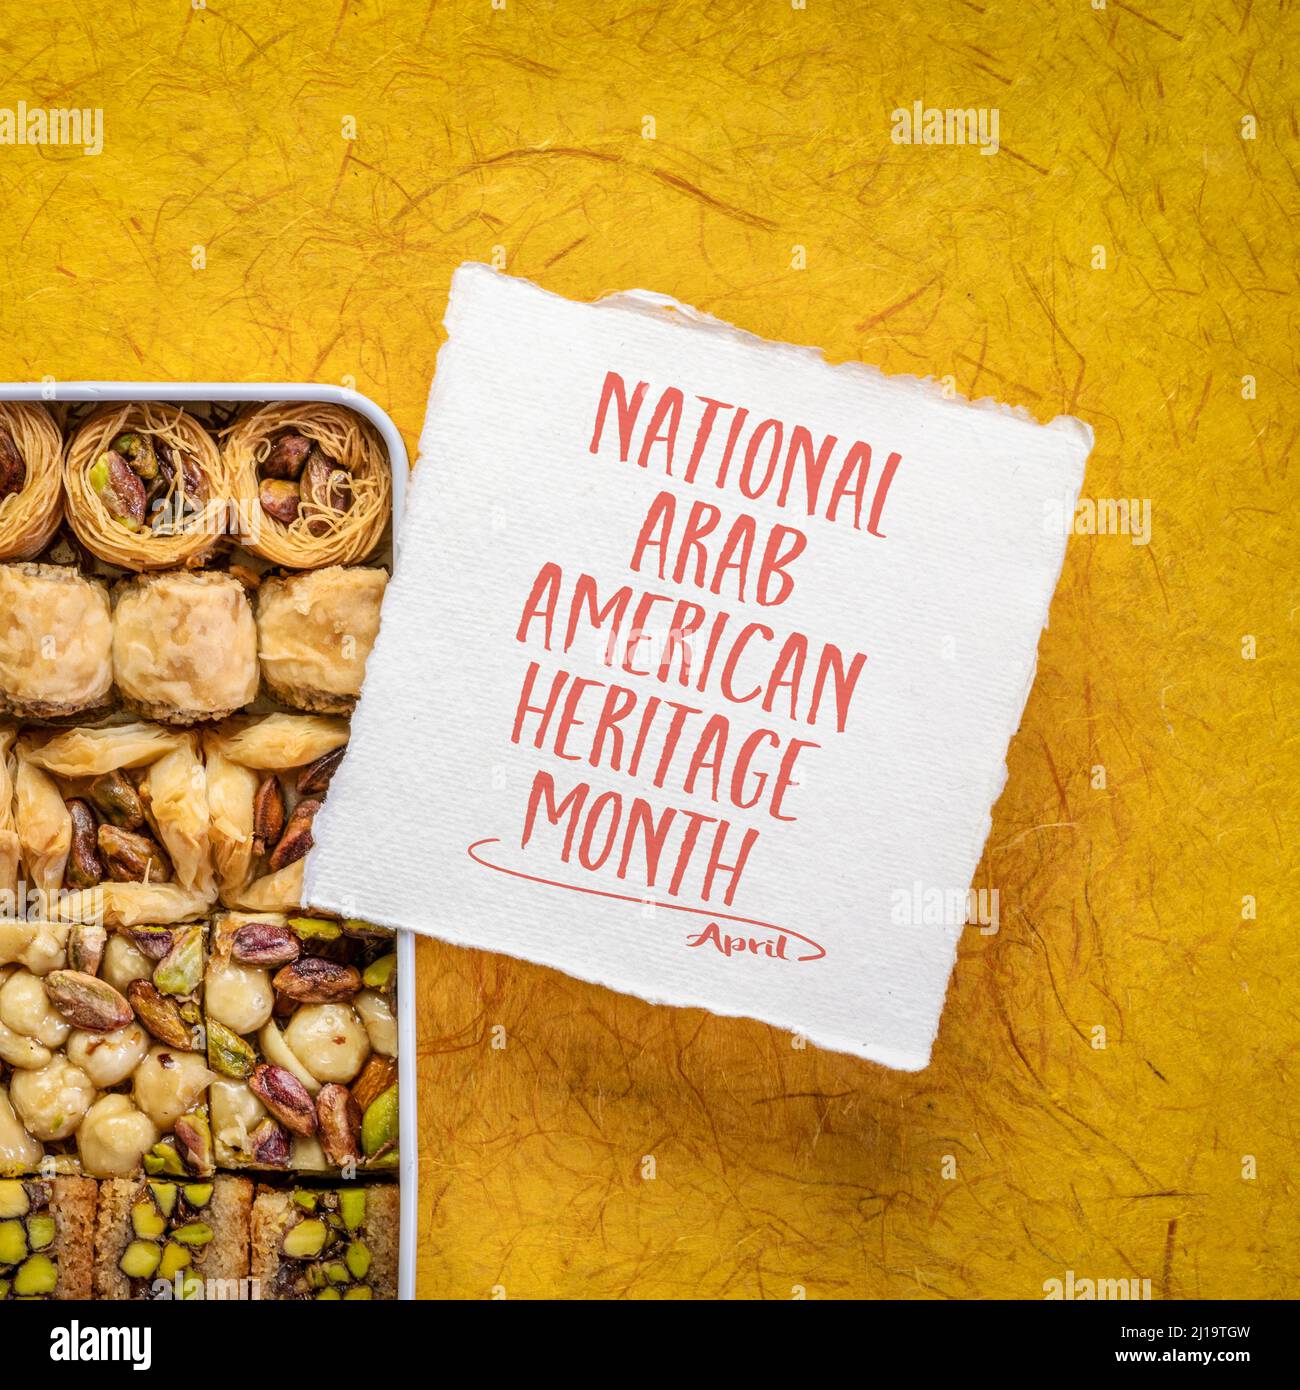 Aprile - National Arab American Heritage Month, nota di promemoria con una scatola di pasta tradizionale turca di baklava Foto Stock